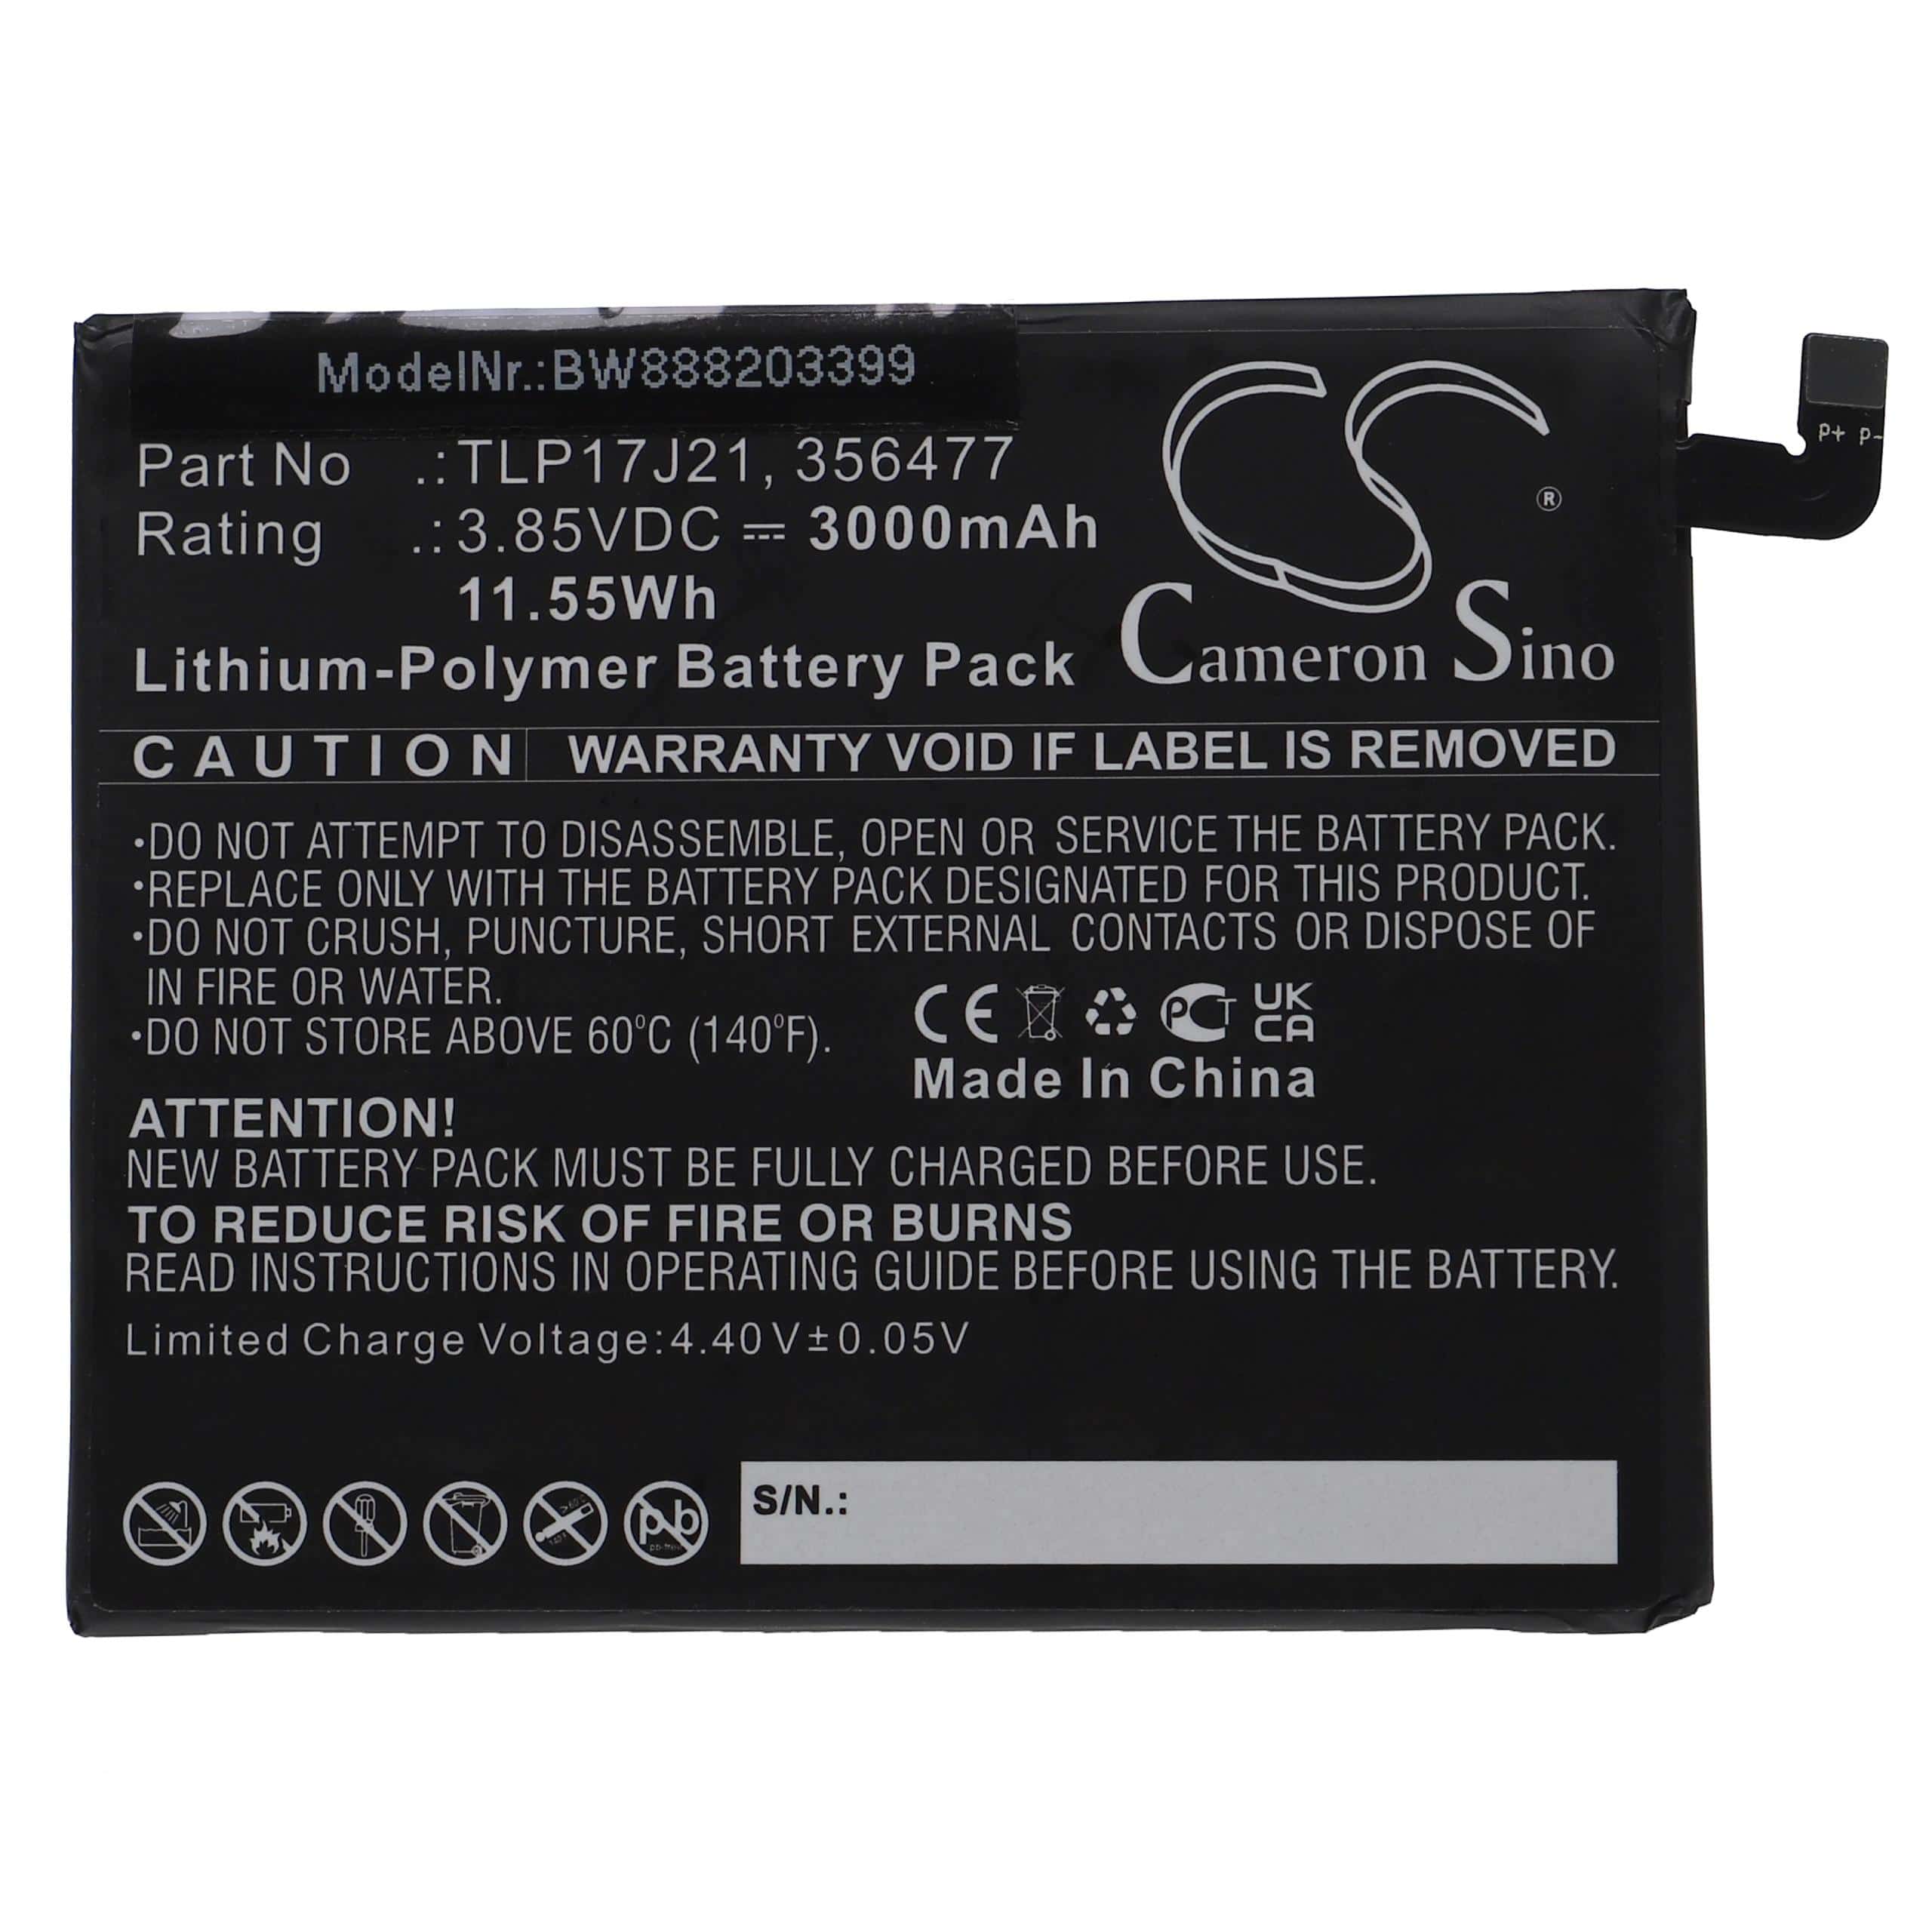 Batterie remplace Wiko TLP17J21, 356477 pour téléphone portable - 3000mAh, 3,85V, Li-polymère